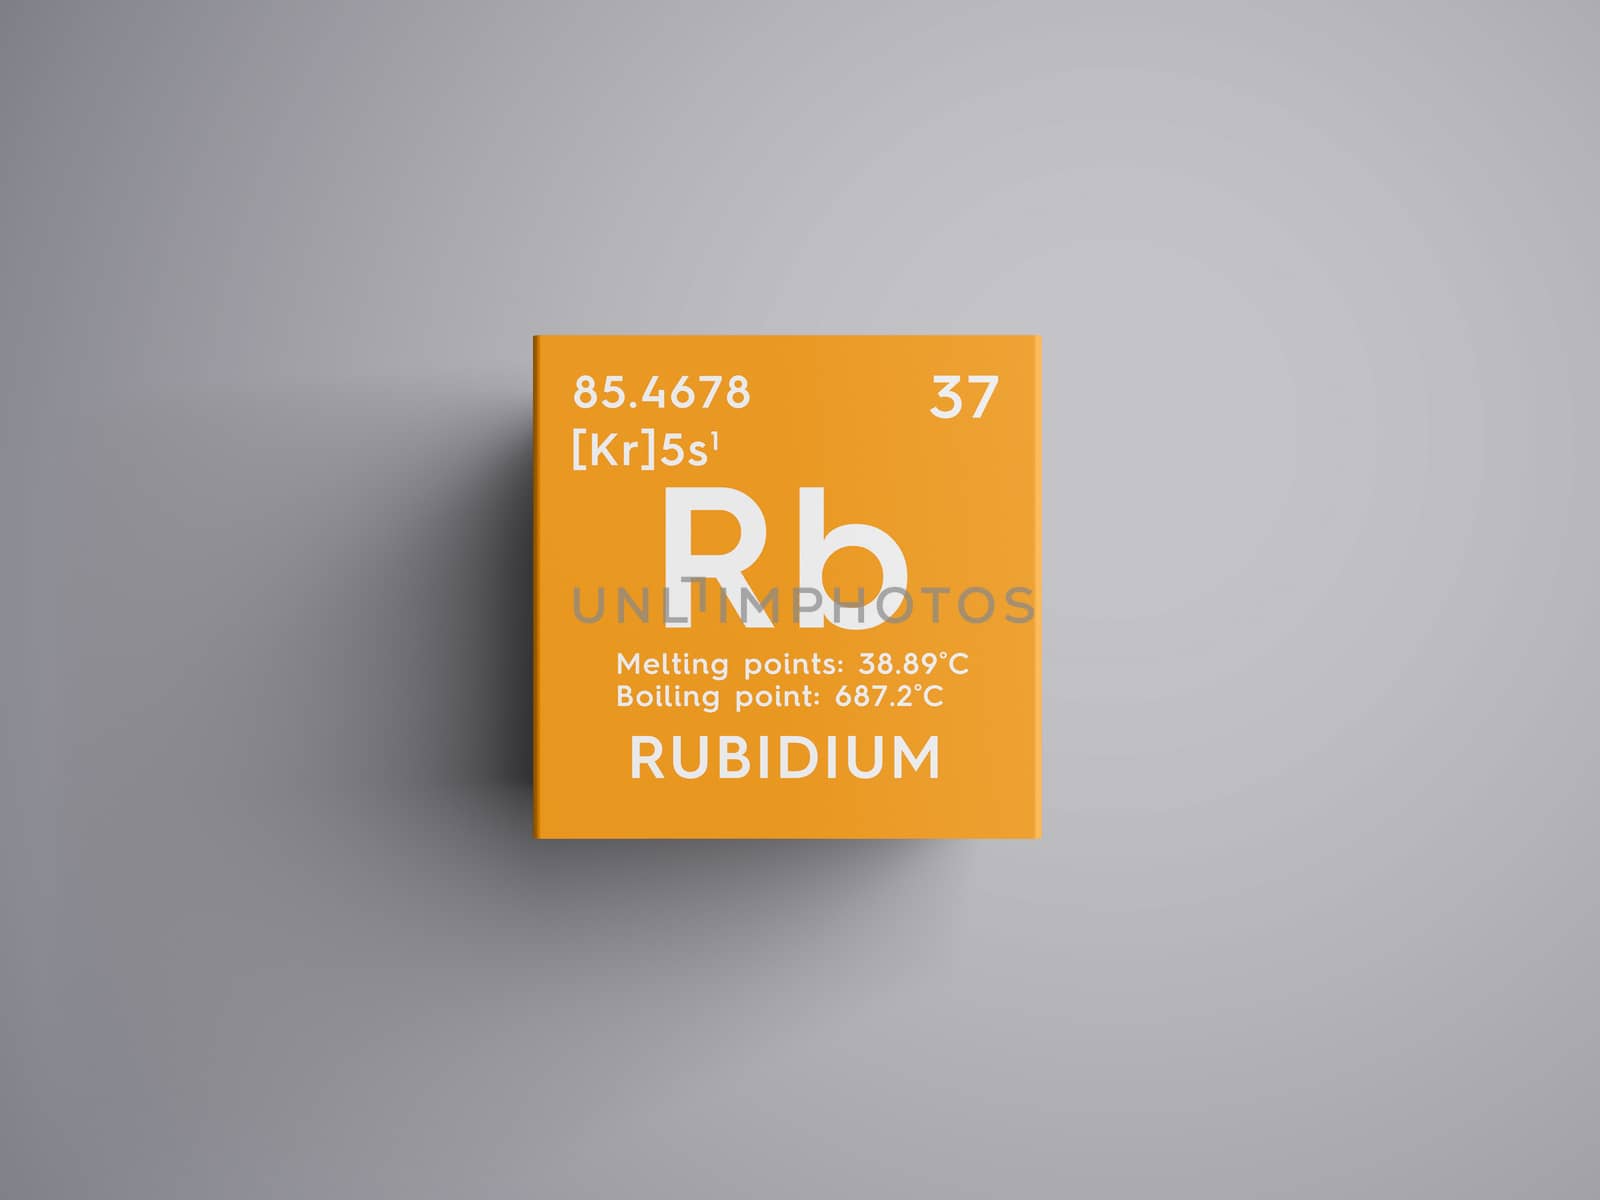 Rubidium. Alkali metals. Chemical Element of Mendeleev's Periodic Table. Rubidium in square cube creative concept. 3D illustration.